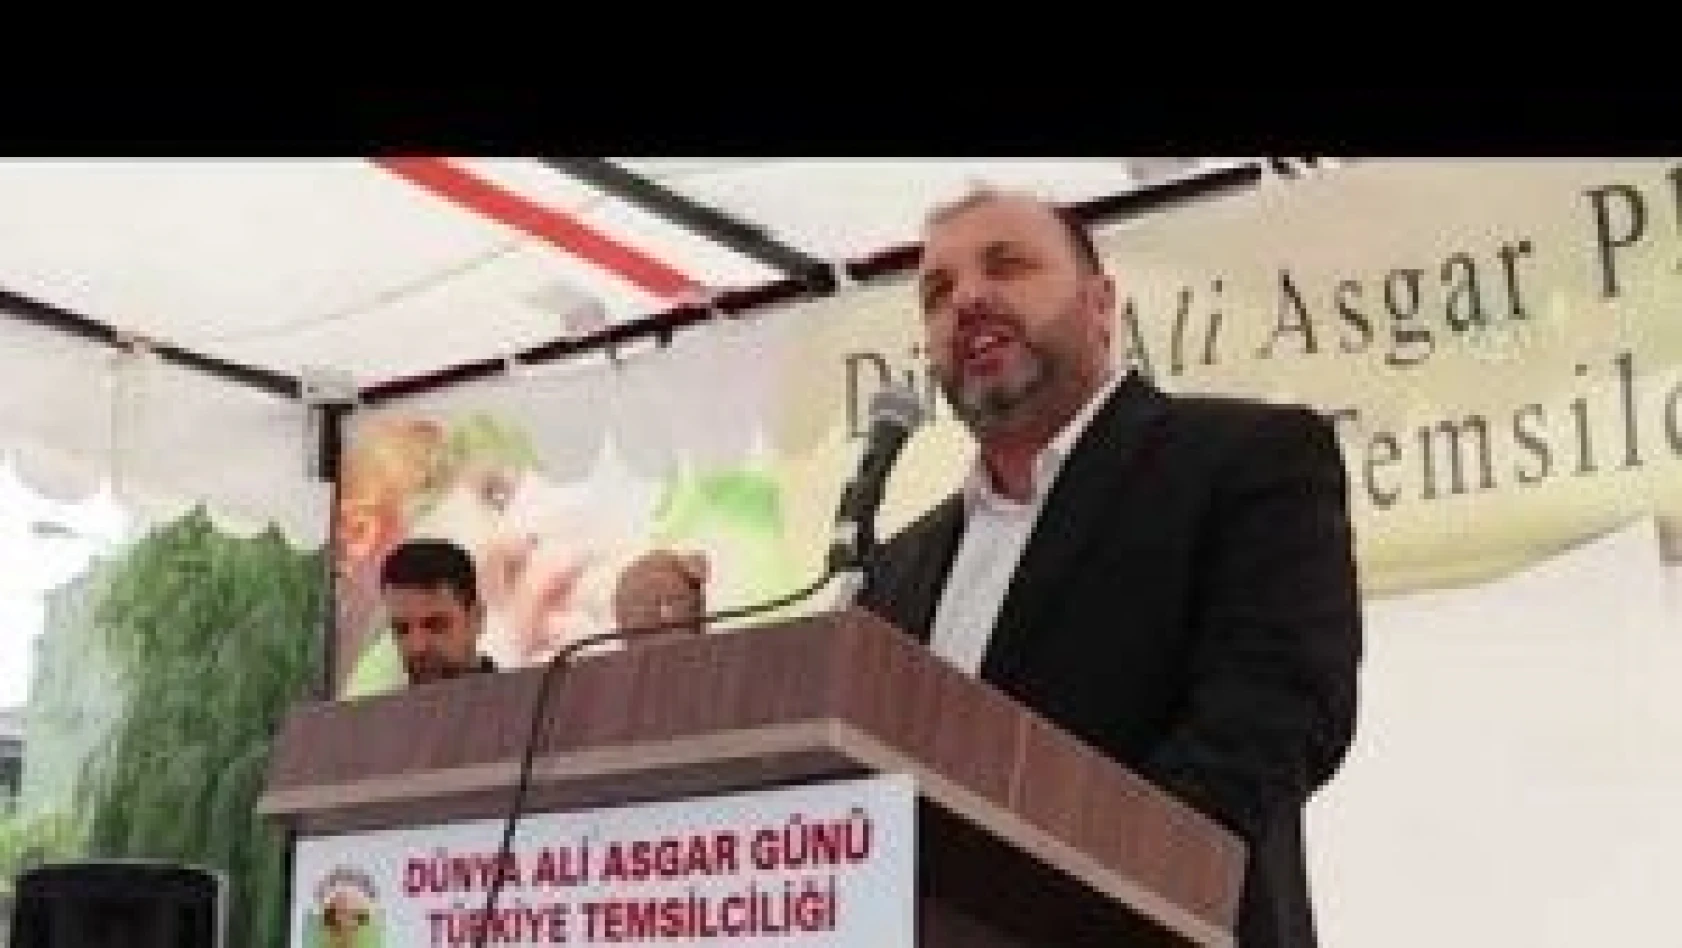 Iğdır'da Ali Asgar matem günü düzenlendi